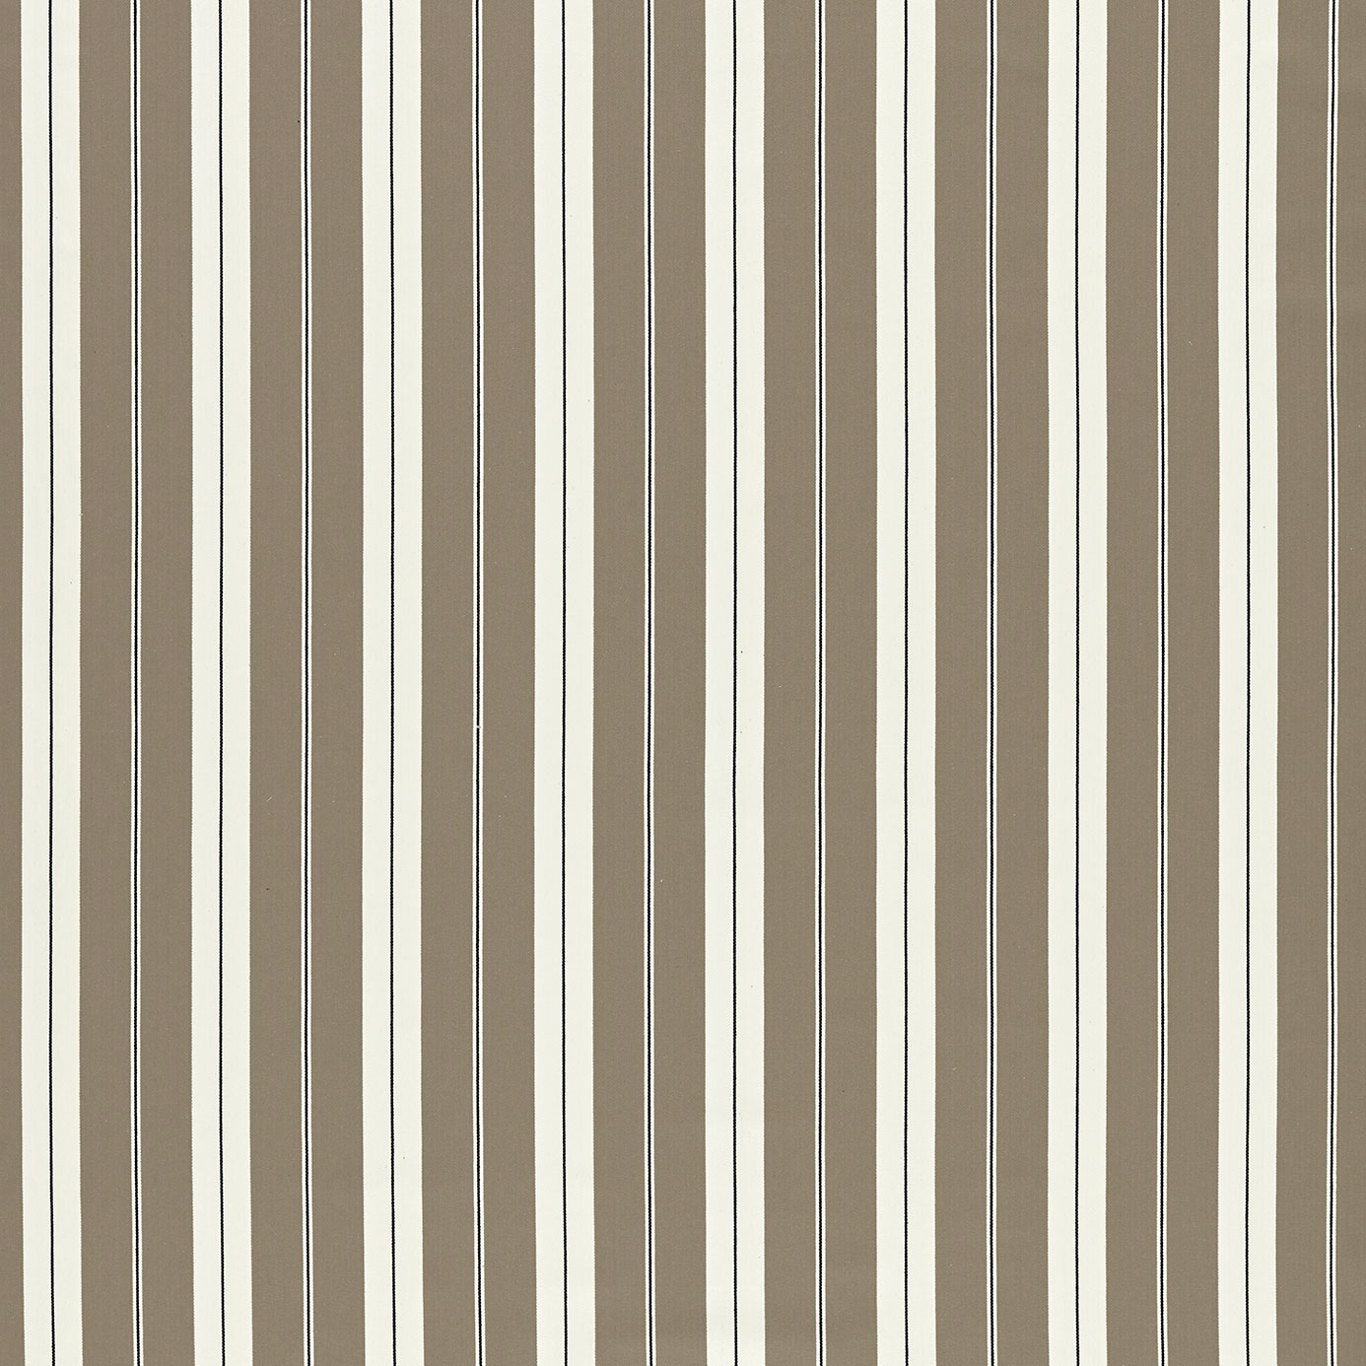 Belgravia Fabric by Clarke & Clarke - F1497/01 - Charcoal/Linen